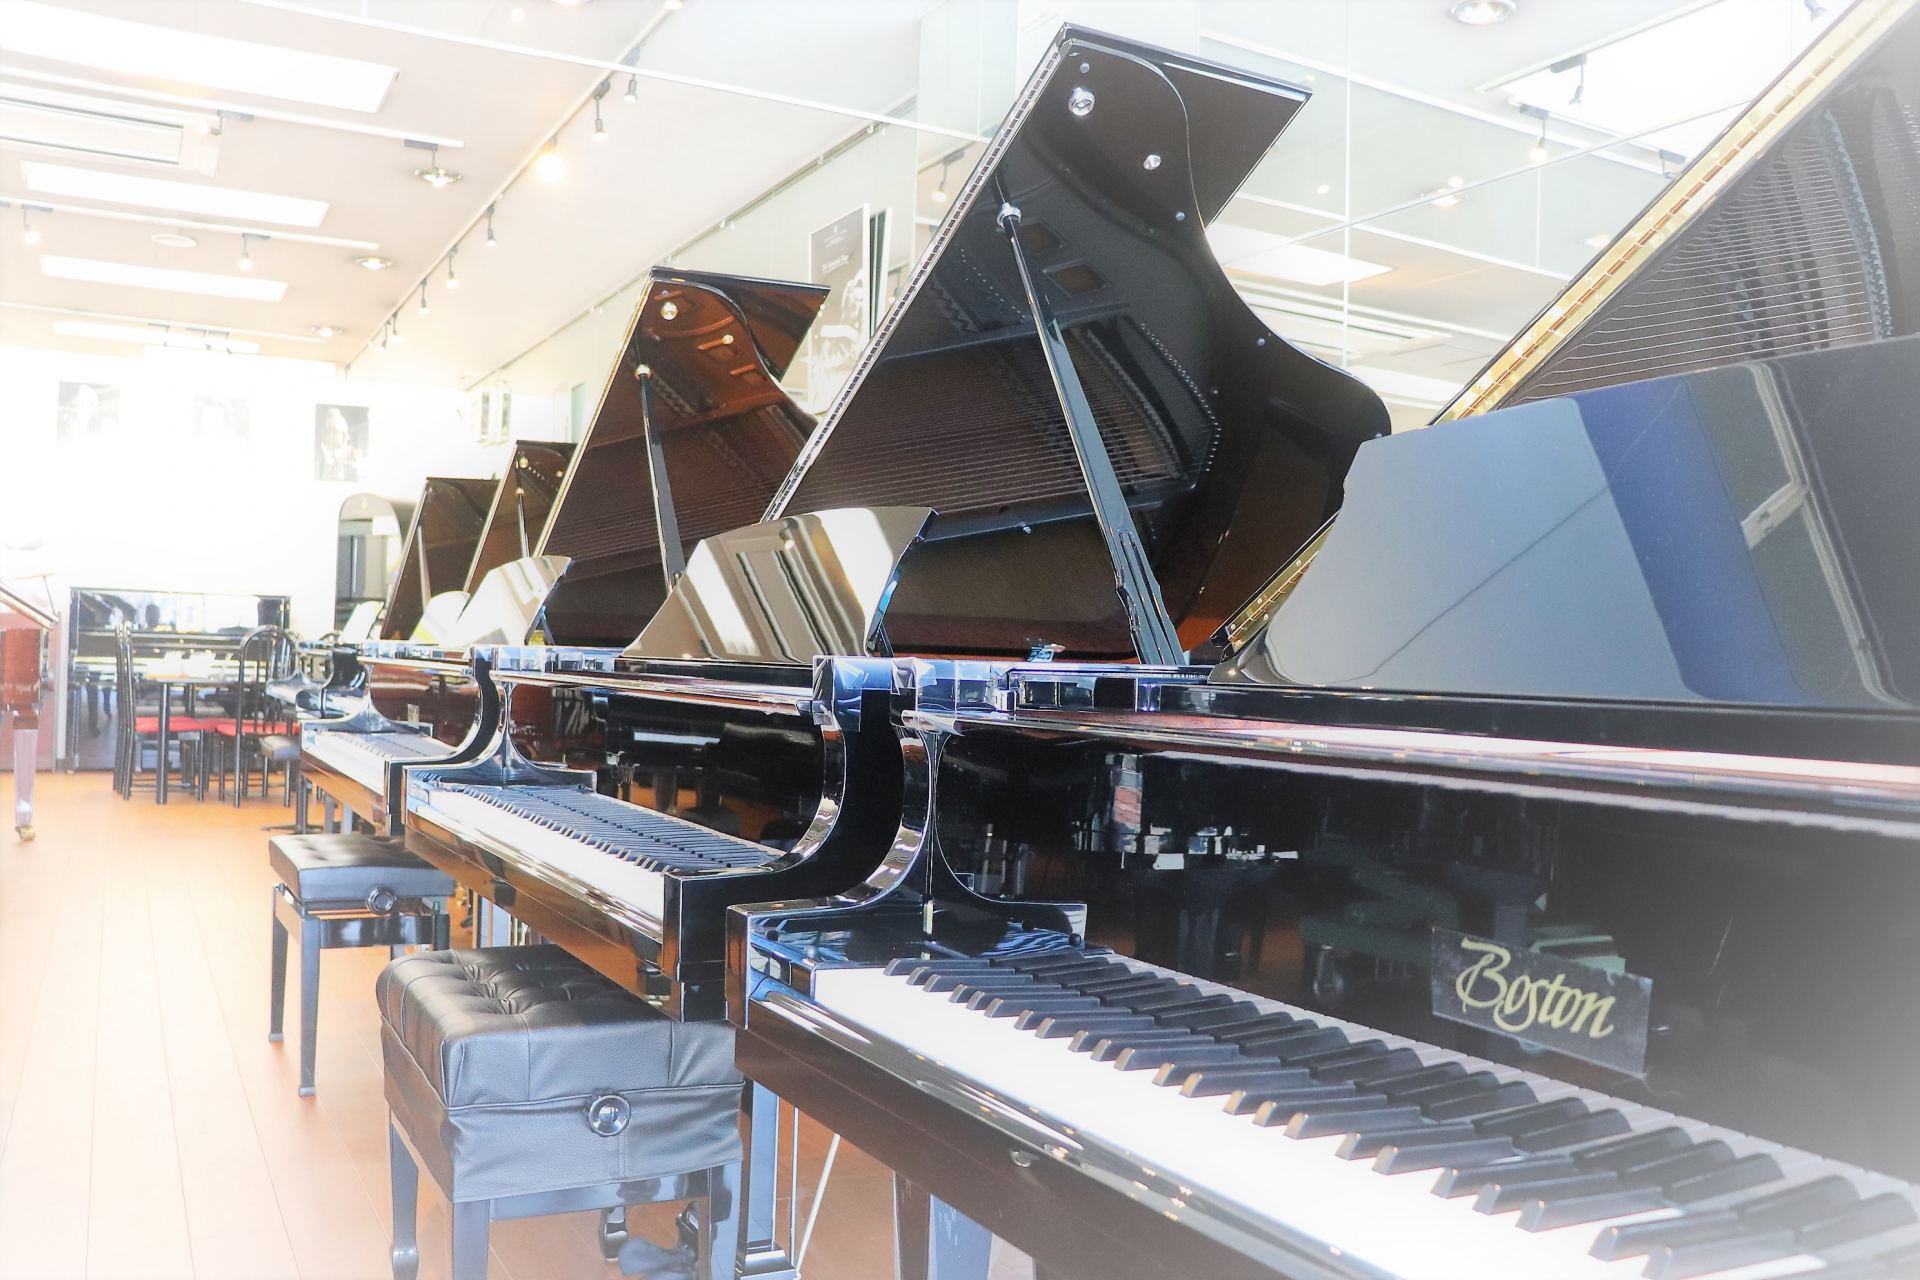 ピアノショールーム八千代店は[!!ボストンピアノ千葉県正規特約代理店!!]です。スタインウェイデザインのピアノとして大人気のボストンピアノを多数展示しています。 2009年にリニューアルされ、さらにダイナミックに重厚な響きに進化しました。優れた設計や素材により、他メーカーのワンサイズ上のピアノにも負 […]